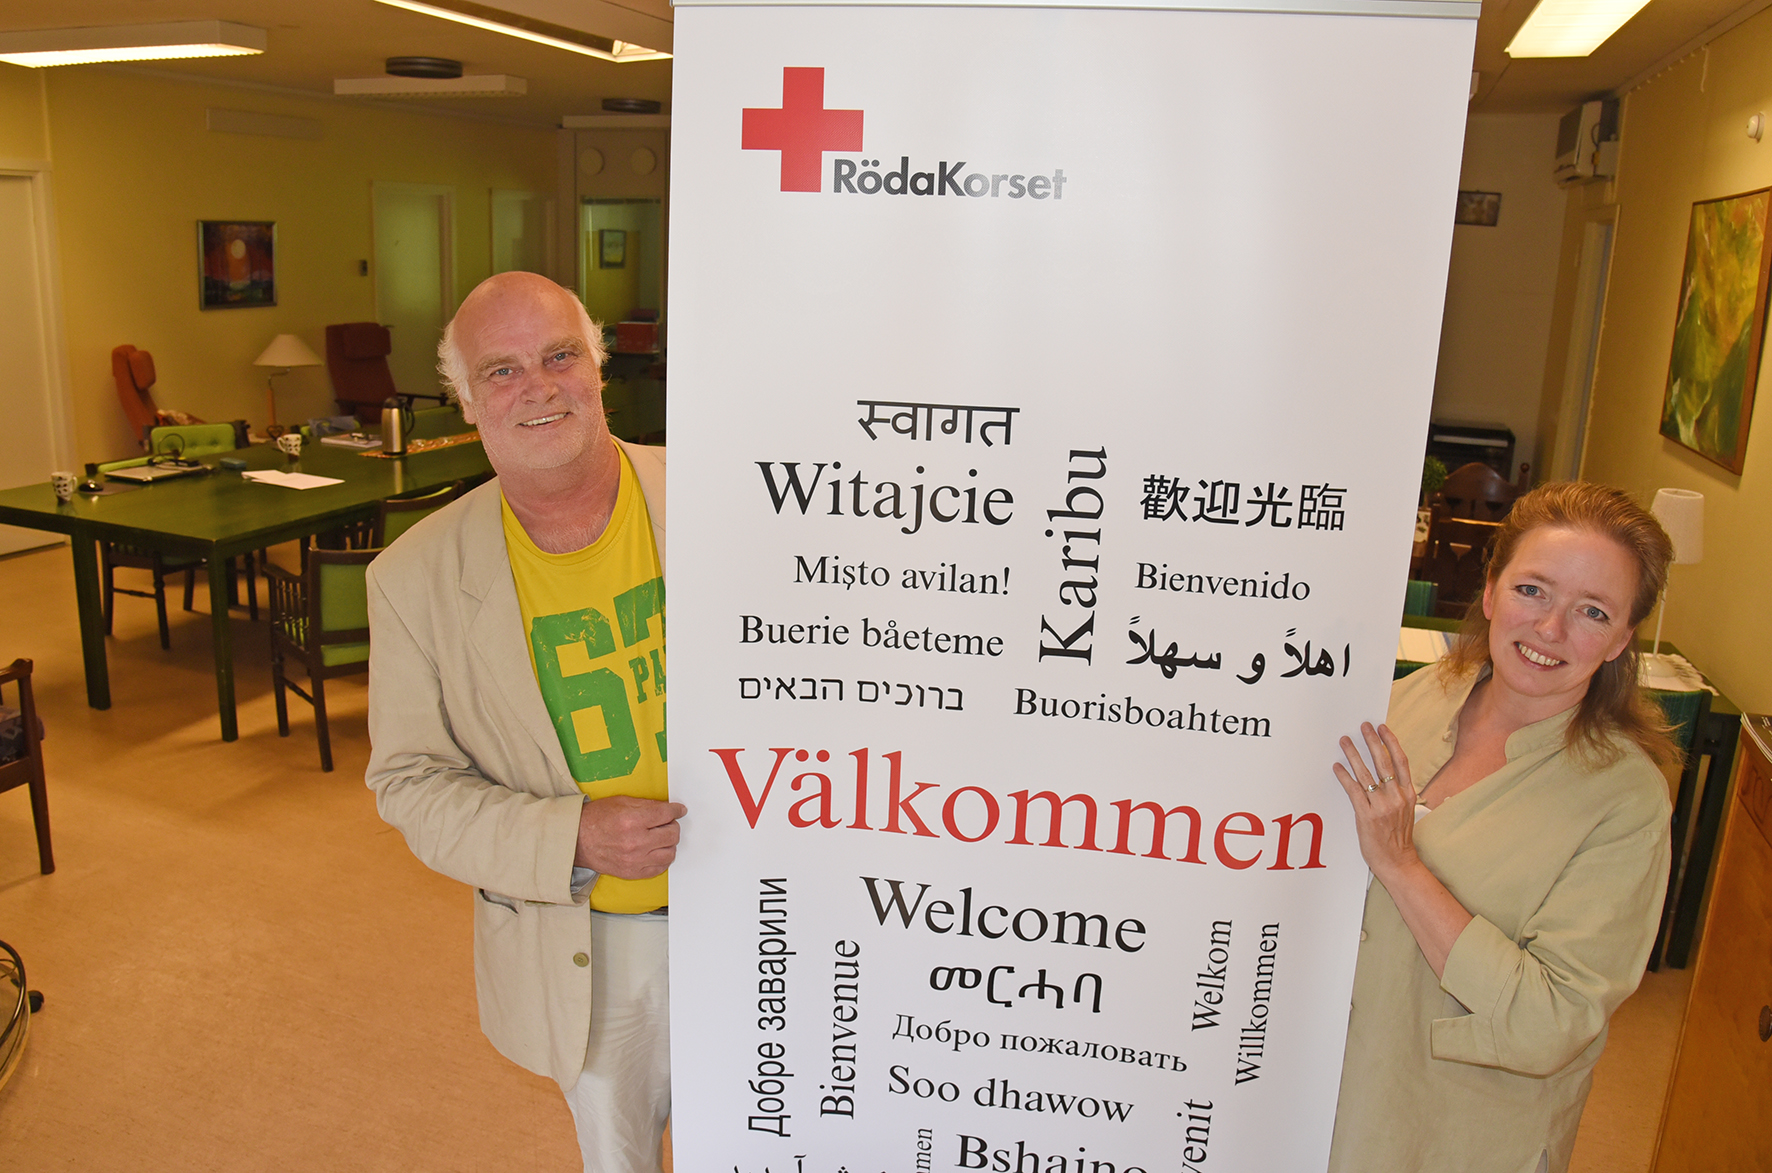 Röda Korsets ordförande, Vidar Sandell, är glad över organisationens rekrytering av NMijke van Ratingen.